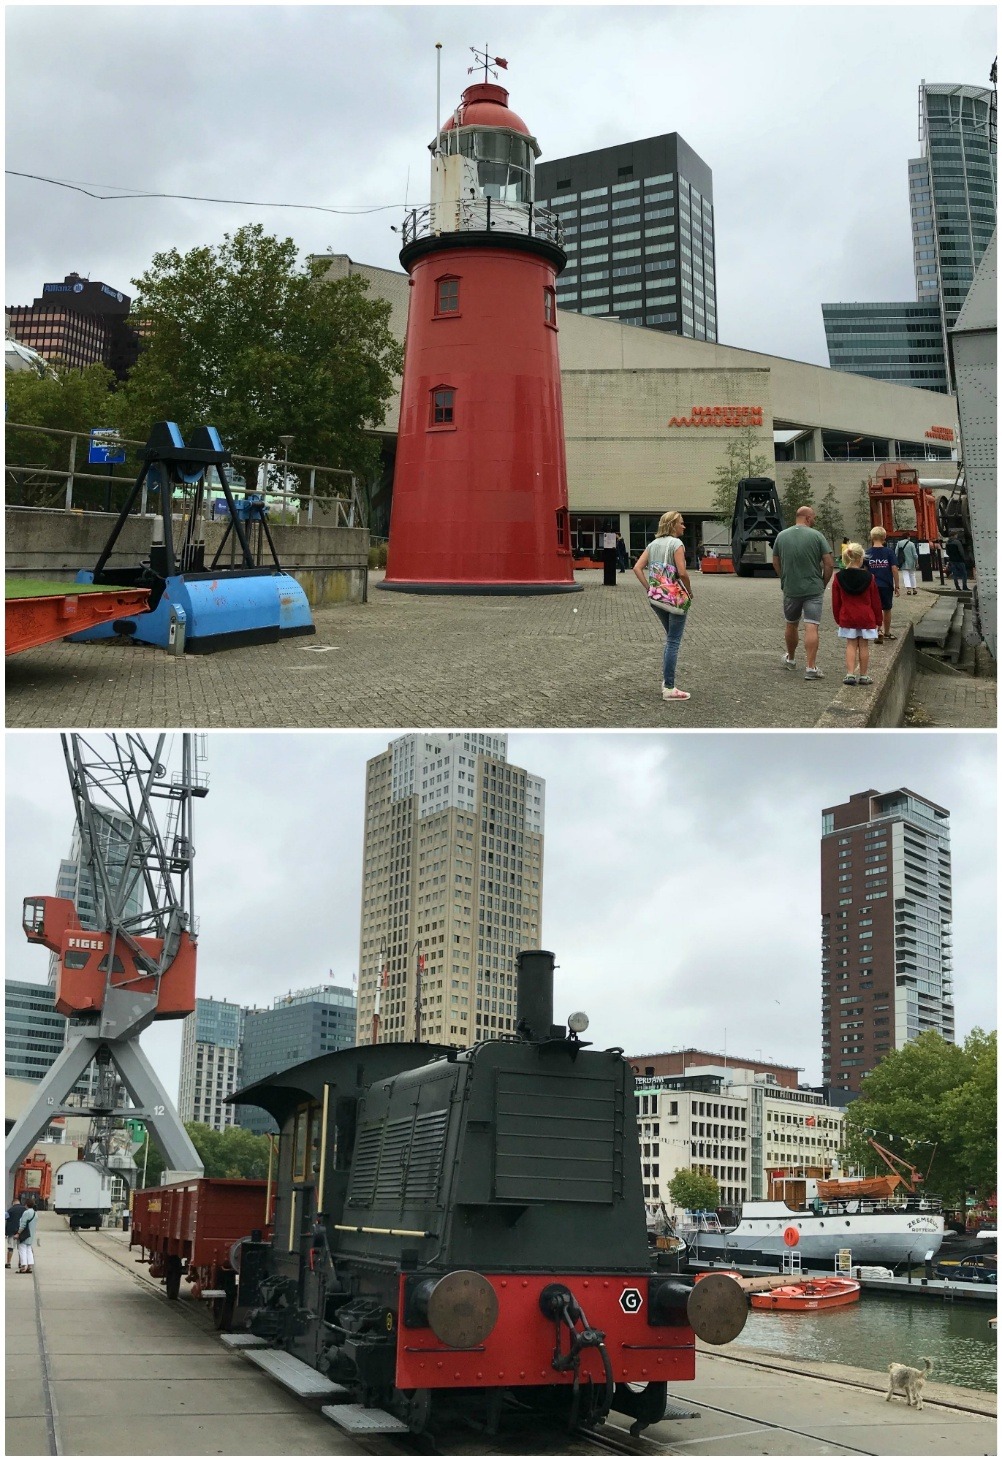 Maritime museum in Rotterdam Photo Heatheronhertravels.com